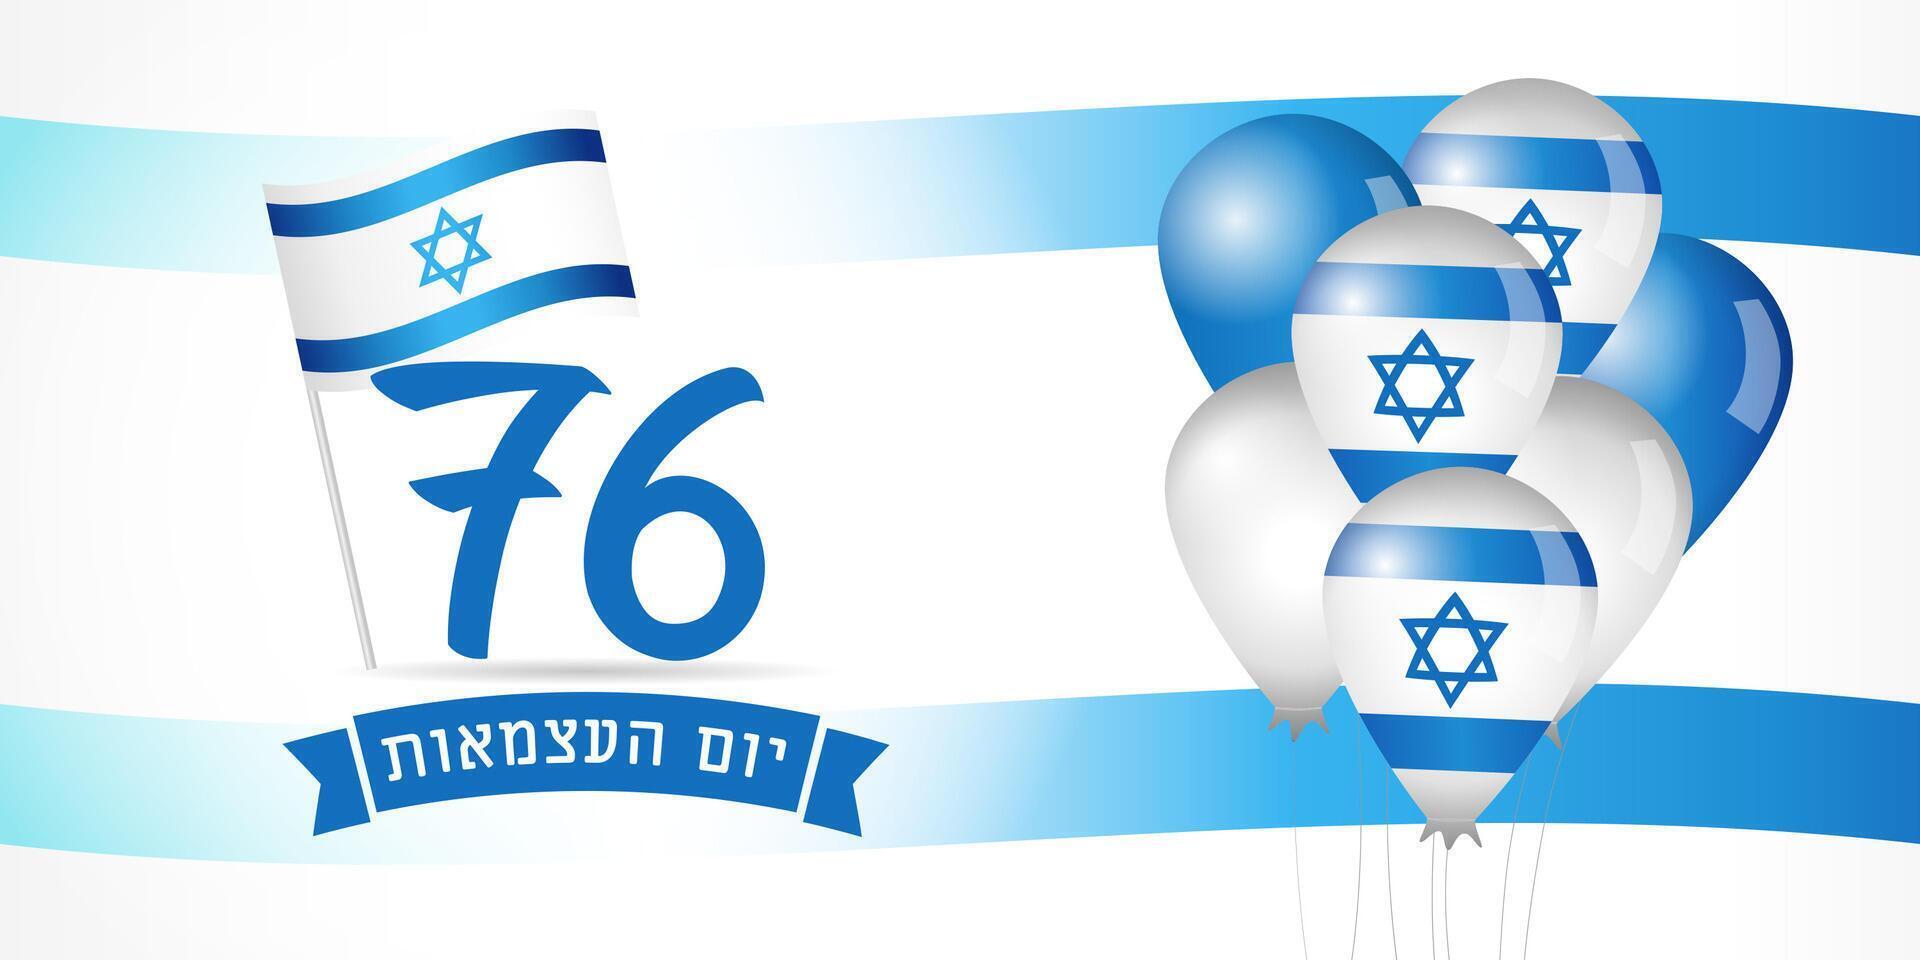 76 jaren Israël onafhankelijkheid dag poster met 3d ballonnen vector